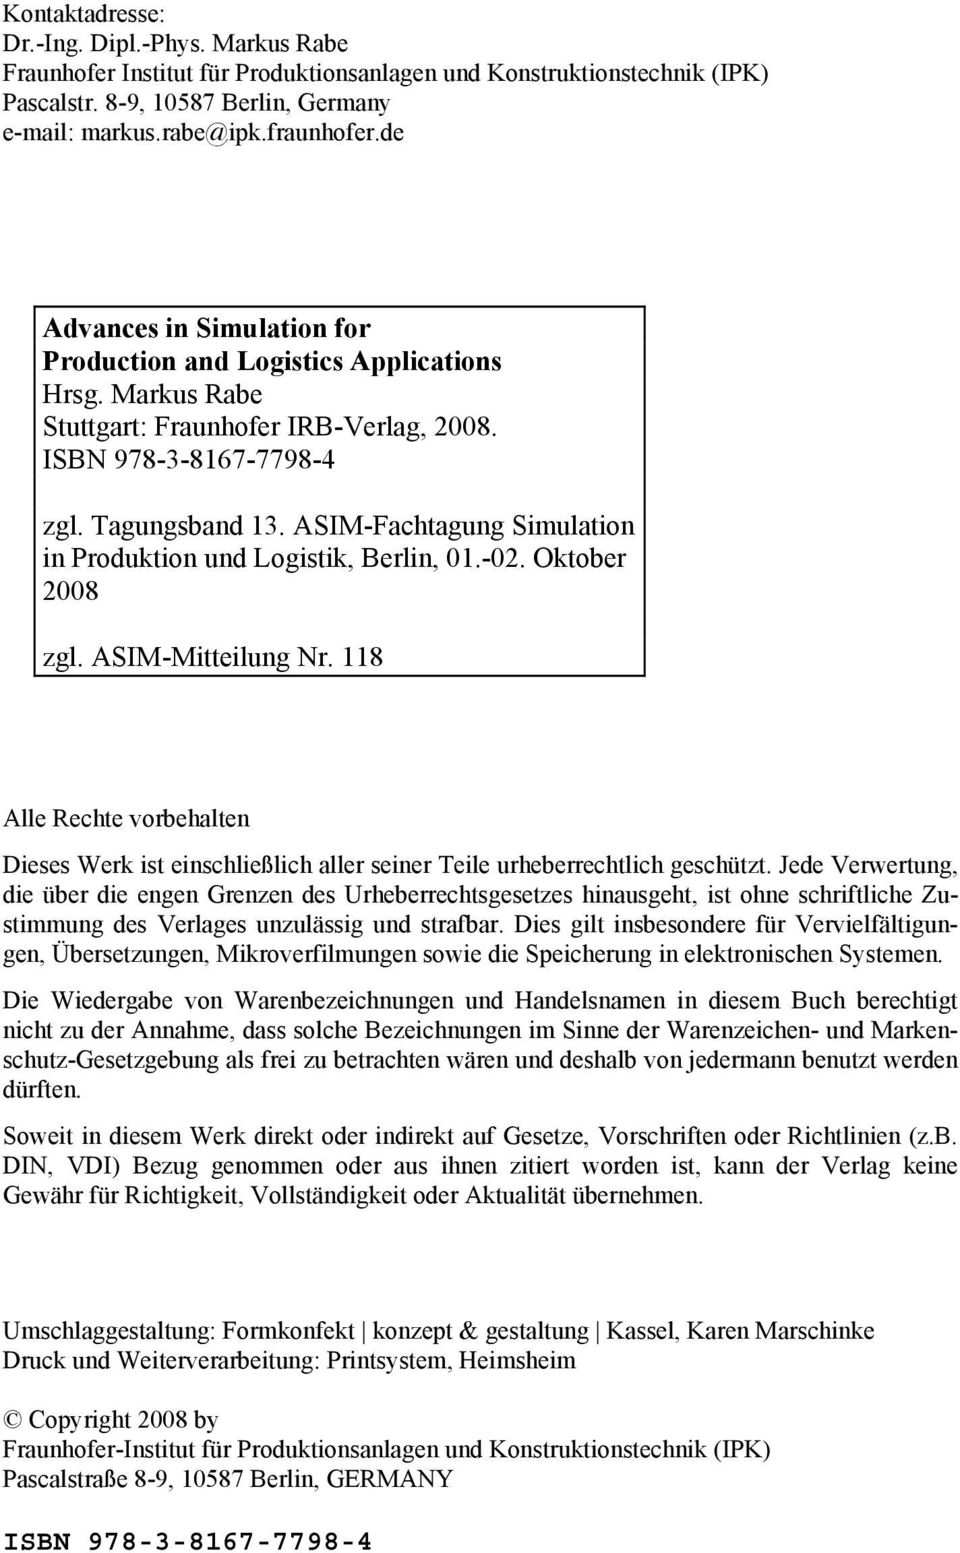 ASIM-Fachtagung Simulation in Produktion und Logistik, Berlin, 01.-02. Oktober 2008 zgl. ASIM-Mitteilung Nr.